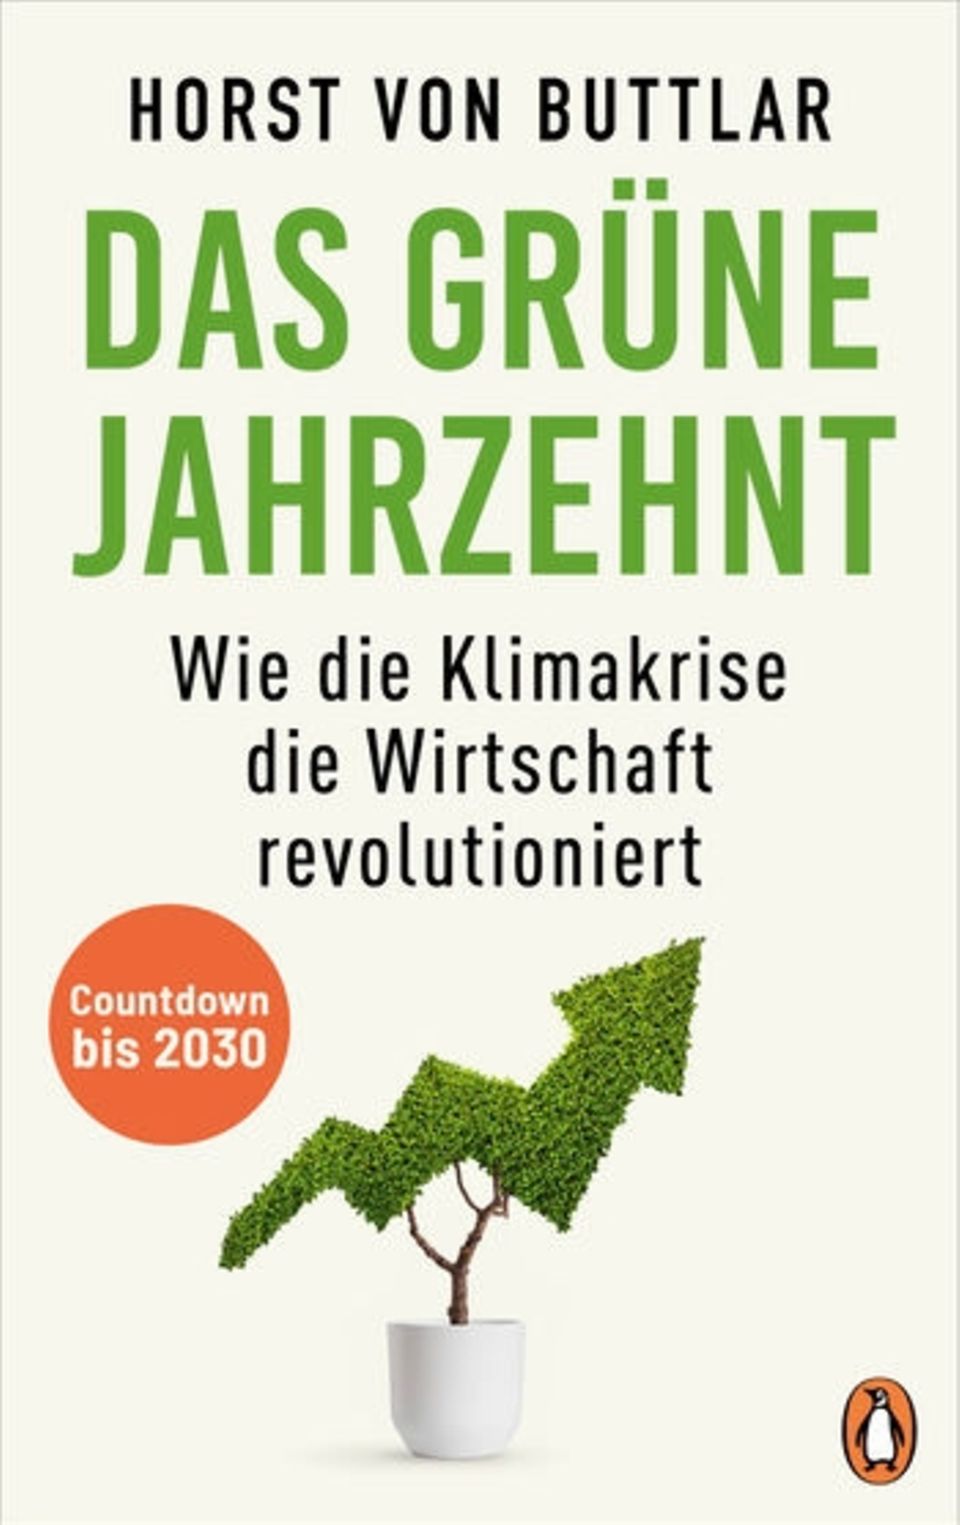 Horst von Buttlar: Das grüne Jahrzehnt Wie die Klimakrise die Wirtschaft revolutioniert, Penguin, 25 Euro, 336 Seiten